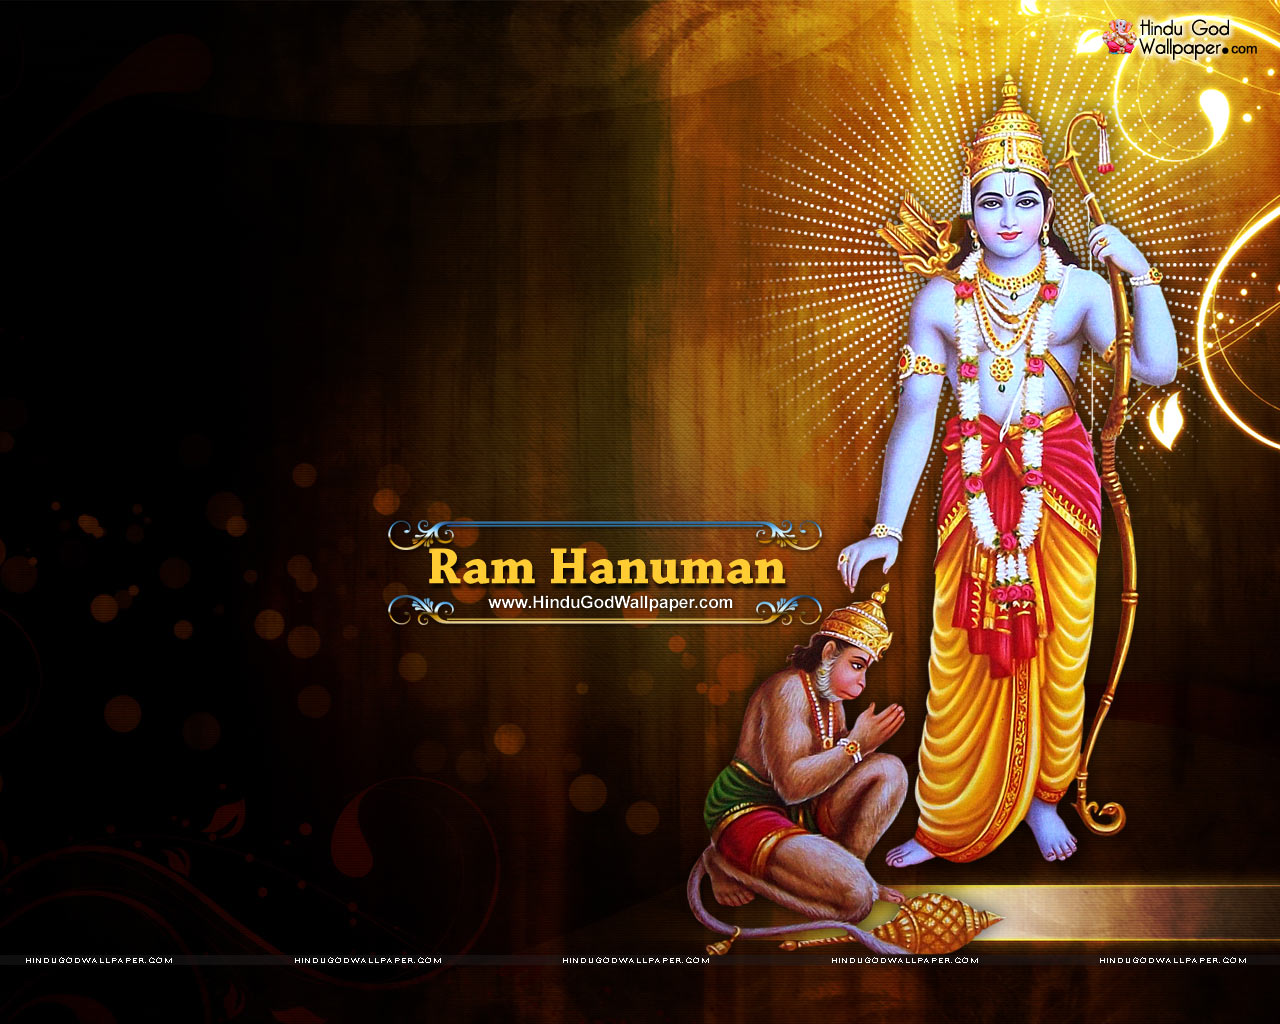 Shri Ram Hanuman Wallpaper Free Download